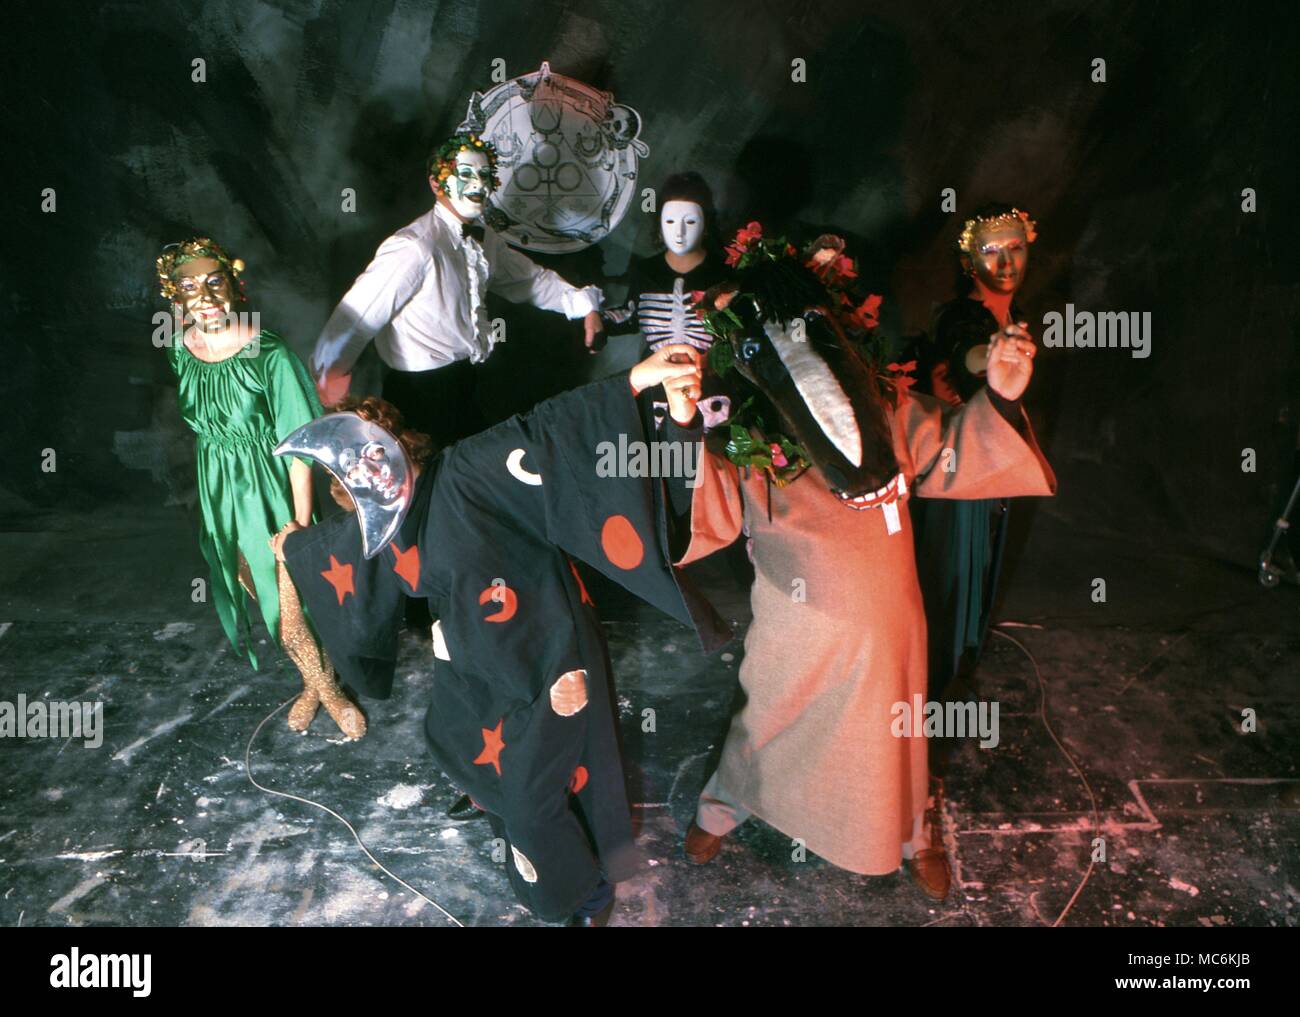 Eine Gruppe von Menschen in einer Hexerei burleske, ausgefallene Kostüme und Masken, Tanzen in einem magischen Kreis. Stockfoto